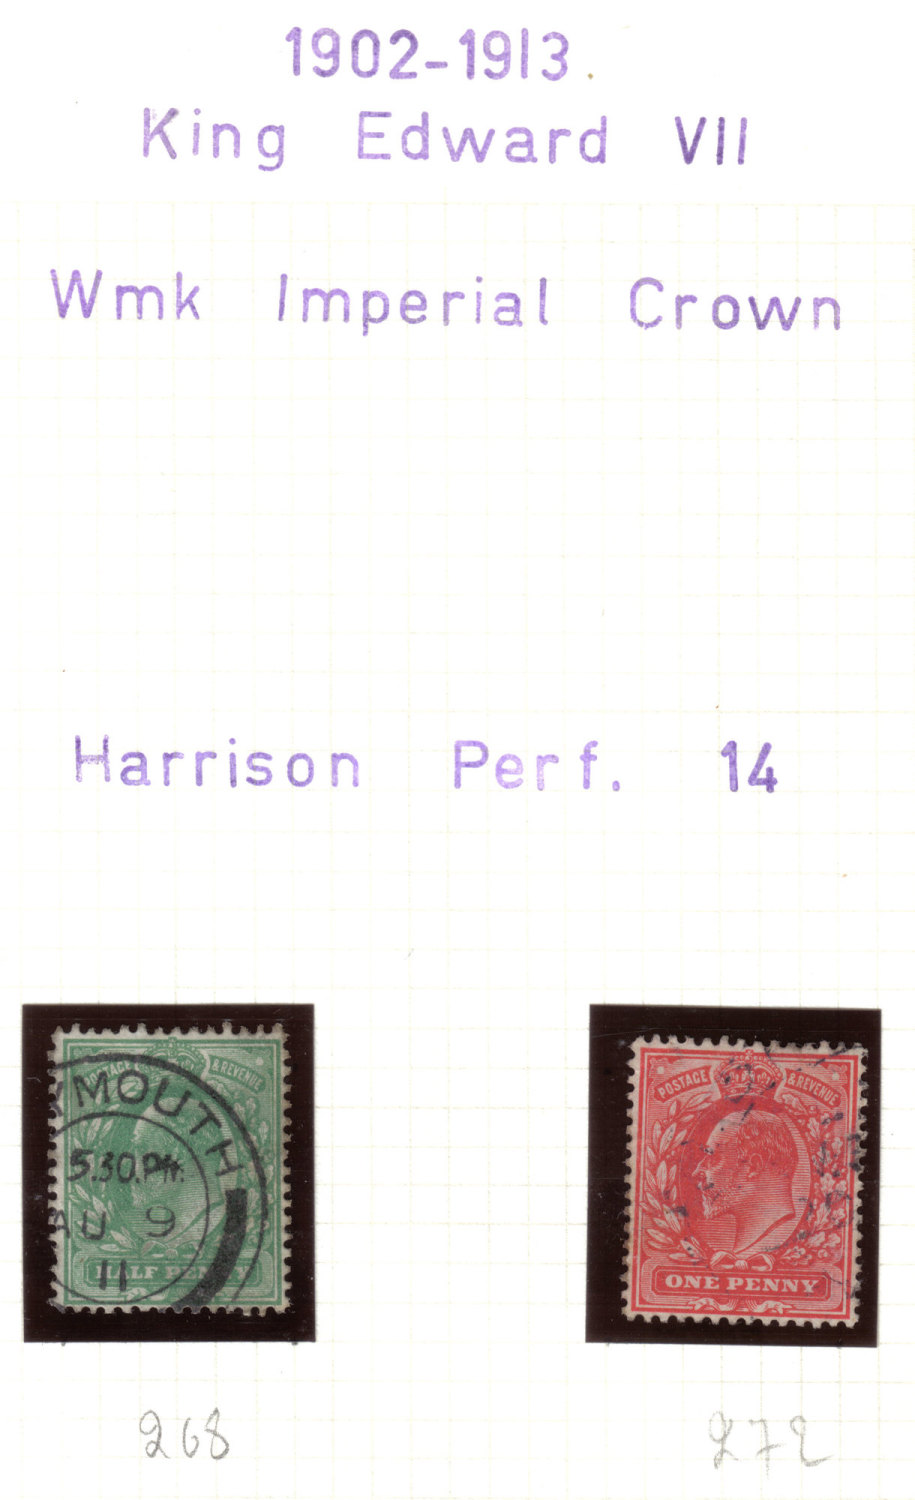  British Stamps 1902 - 1913 King Edward VII - USED (h667)